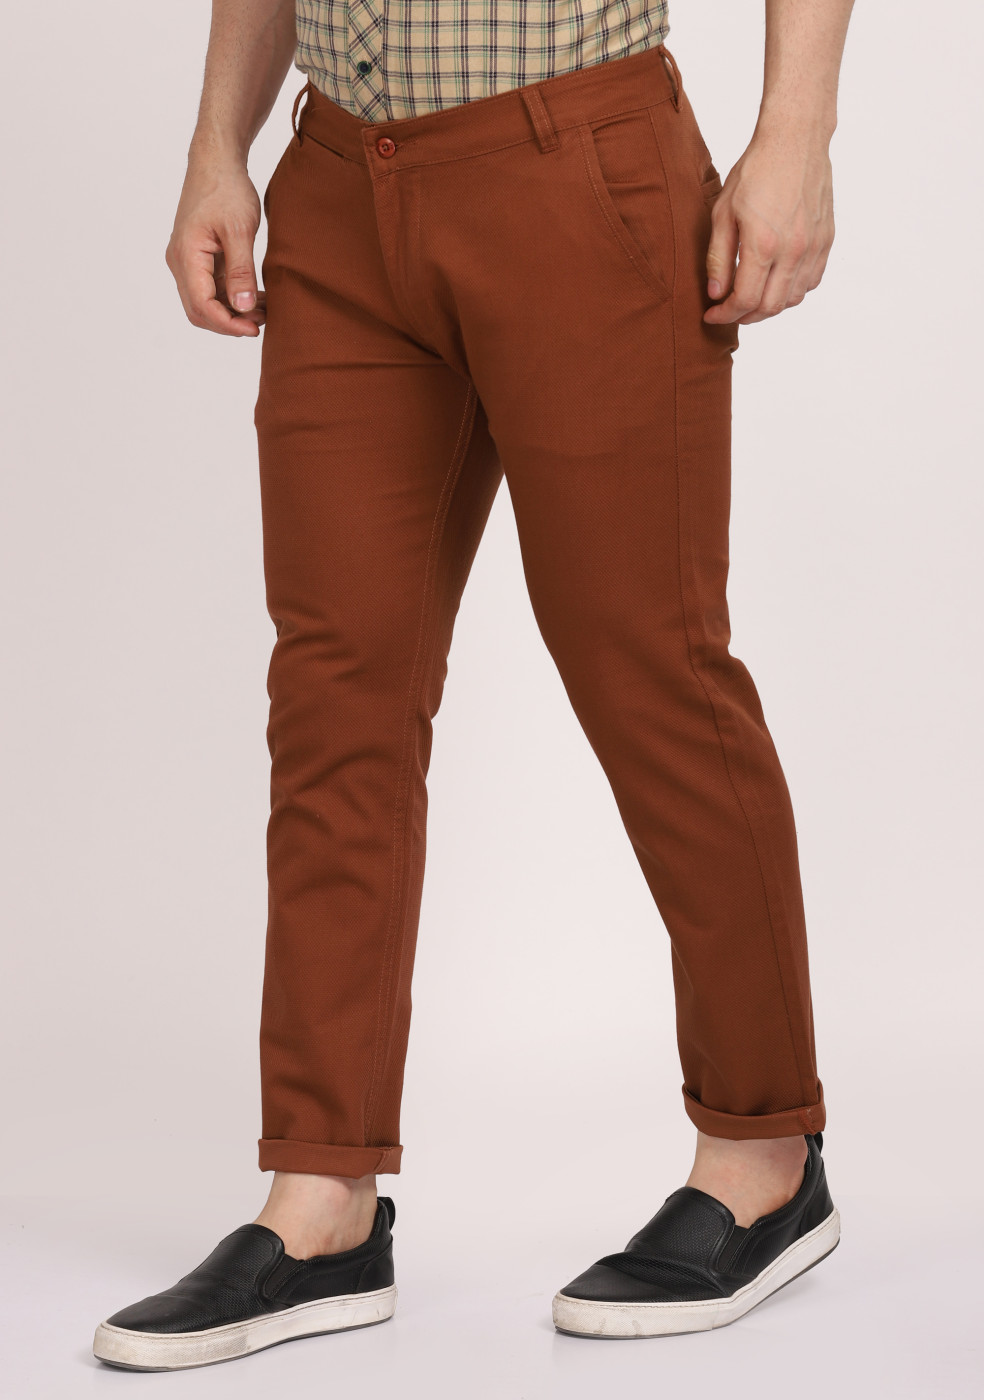 ASHTOM Cotton Trouser Regular Fit For Men